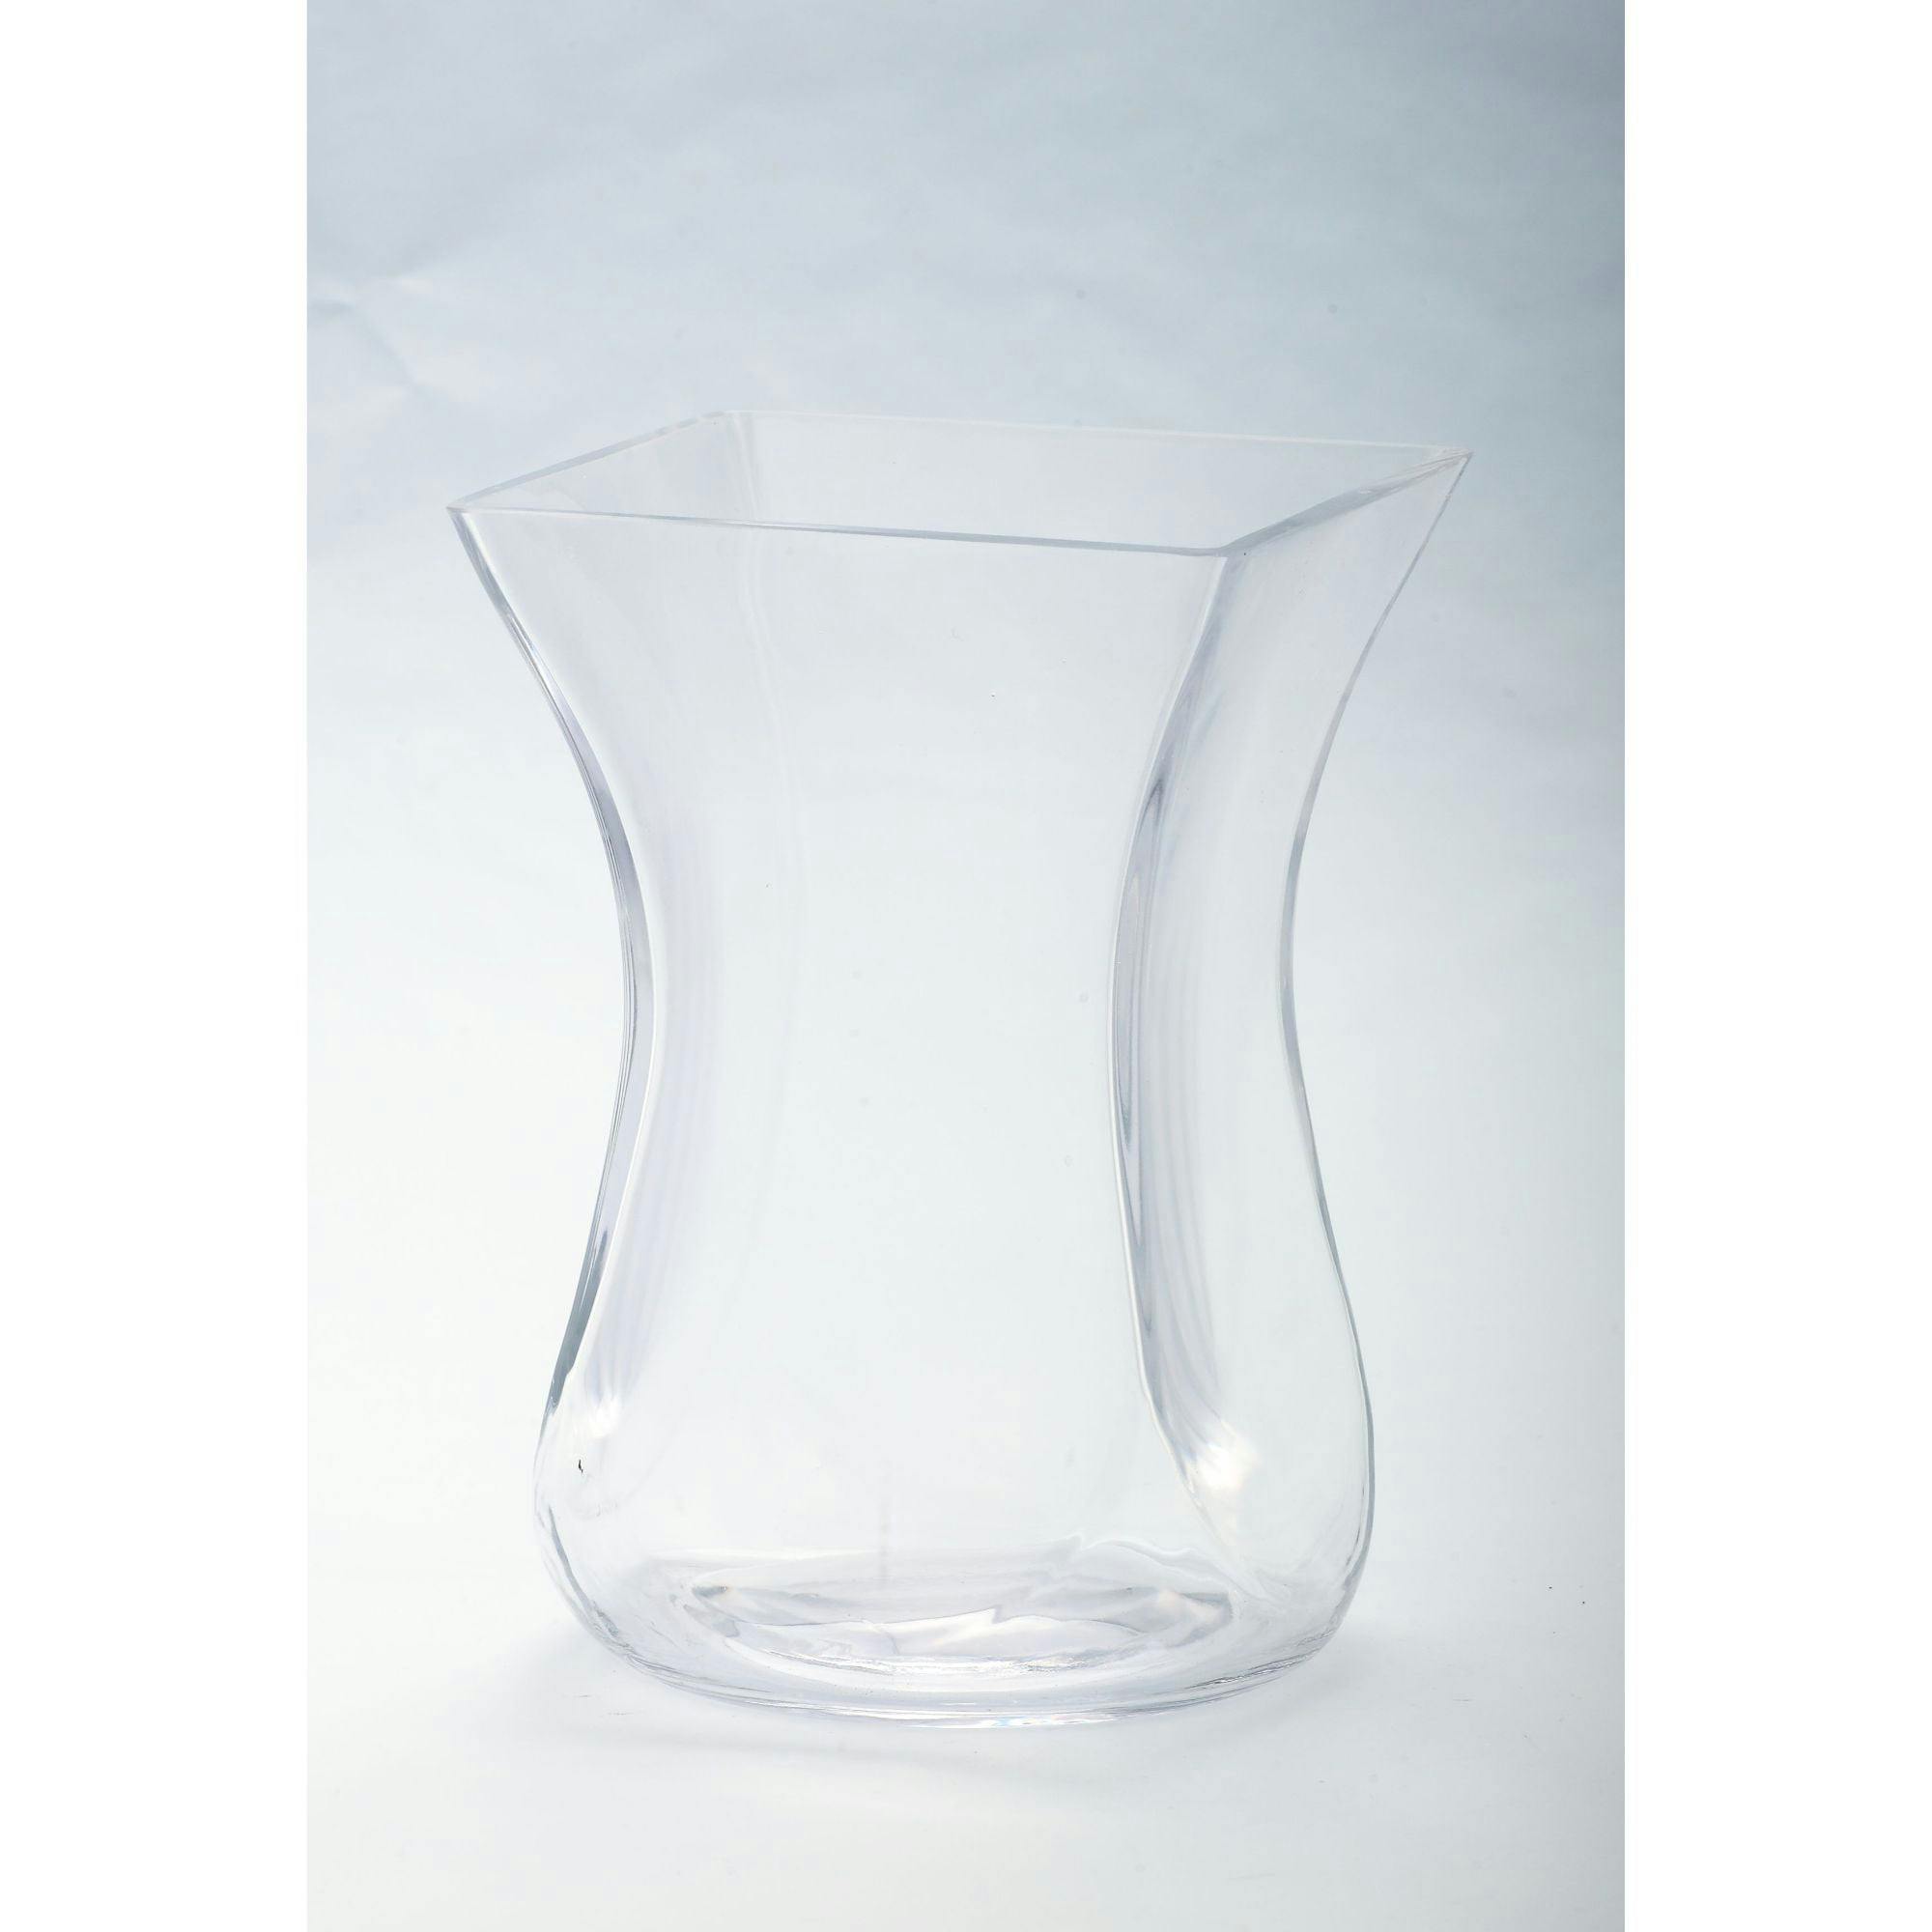 Elegant 9" Clear Glass Square Tapered Flower Vase